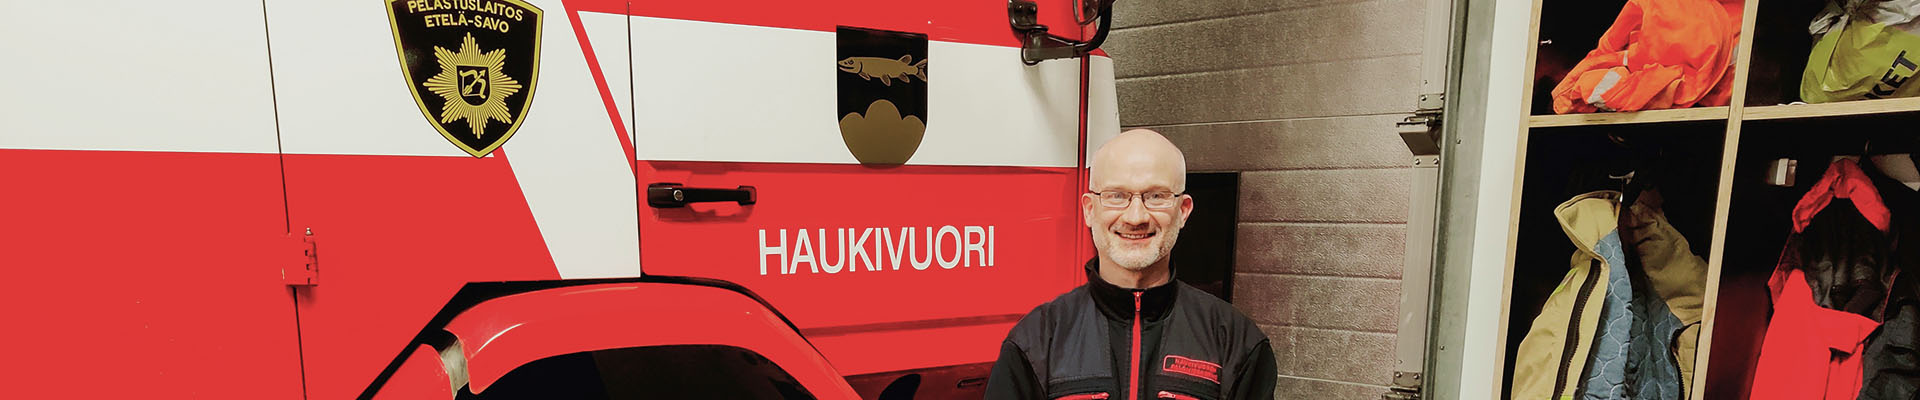 Haukivuoren sopimuspalokuntalainen Mika Karppinen seisoo paloauton ja sopimuspalokuntalaisten varustekaapin vierellä Haukivuoren paloaseman kalustohallissa.